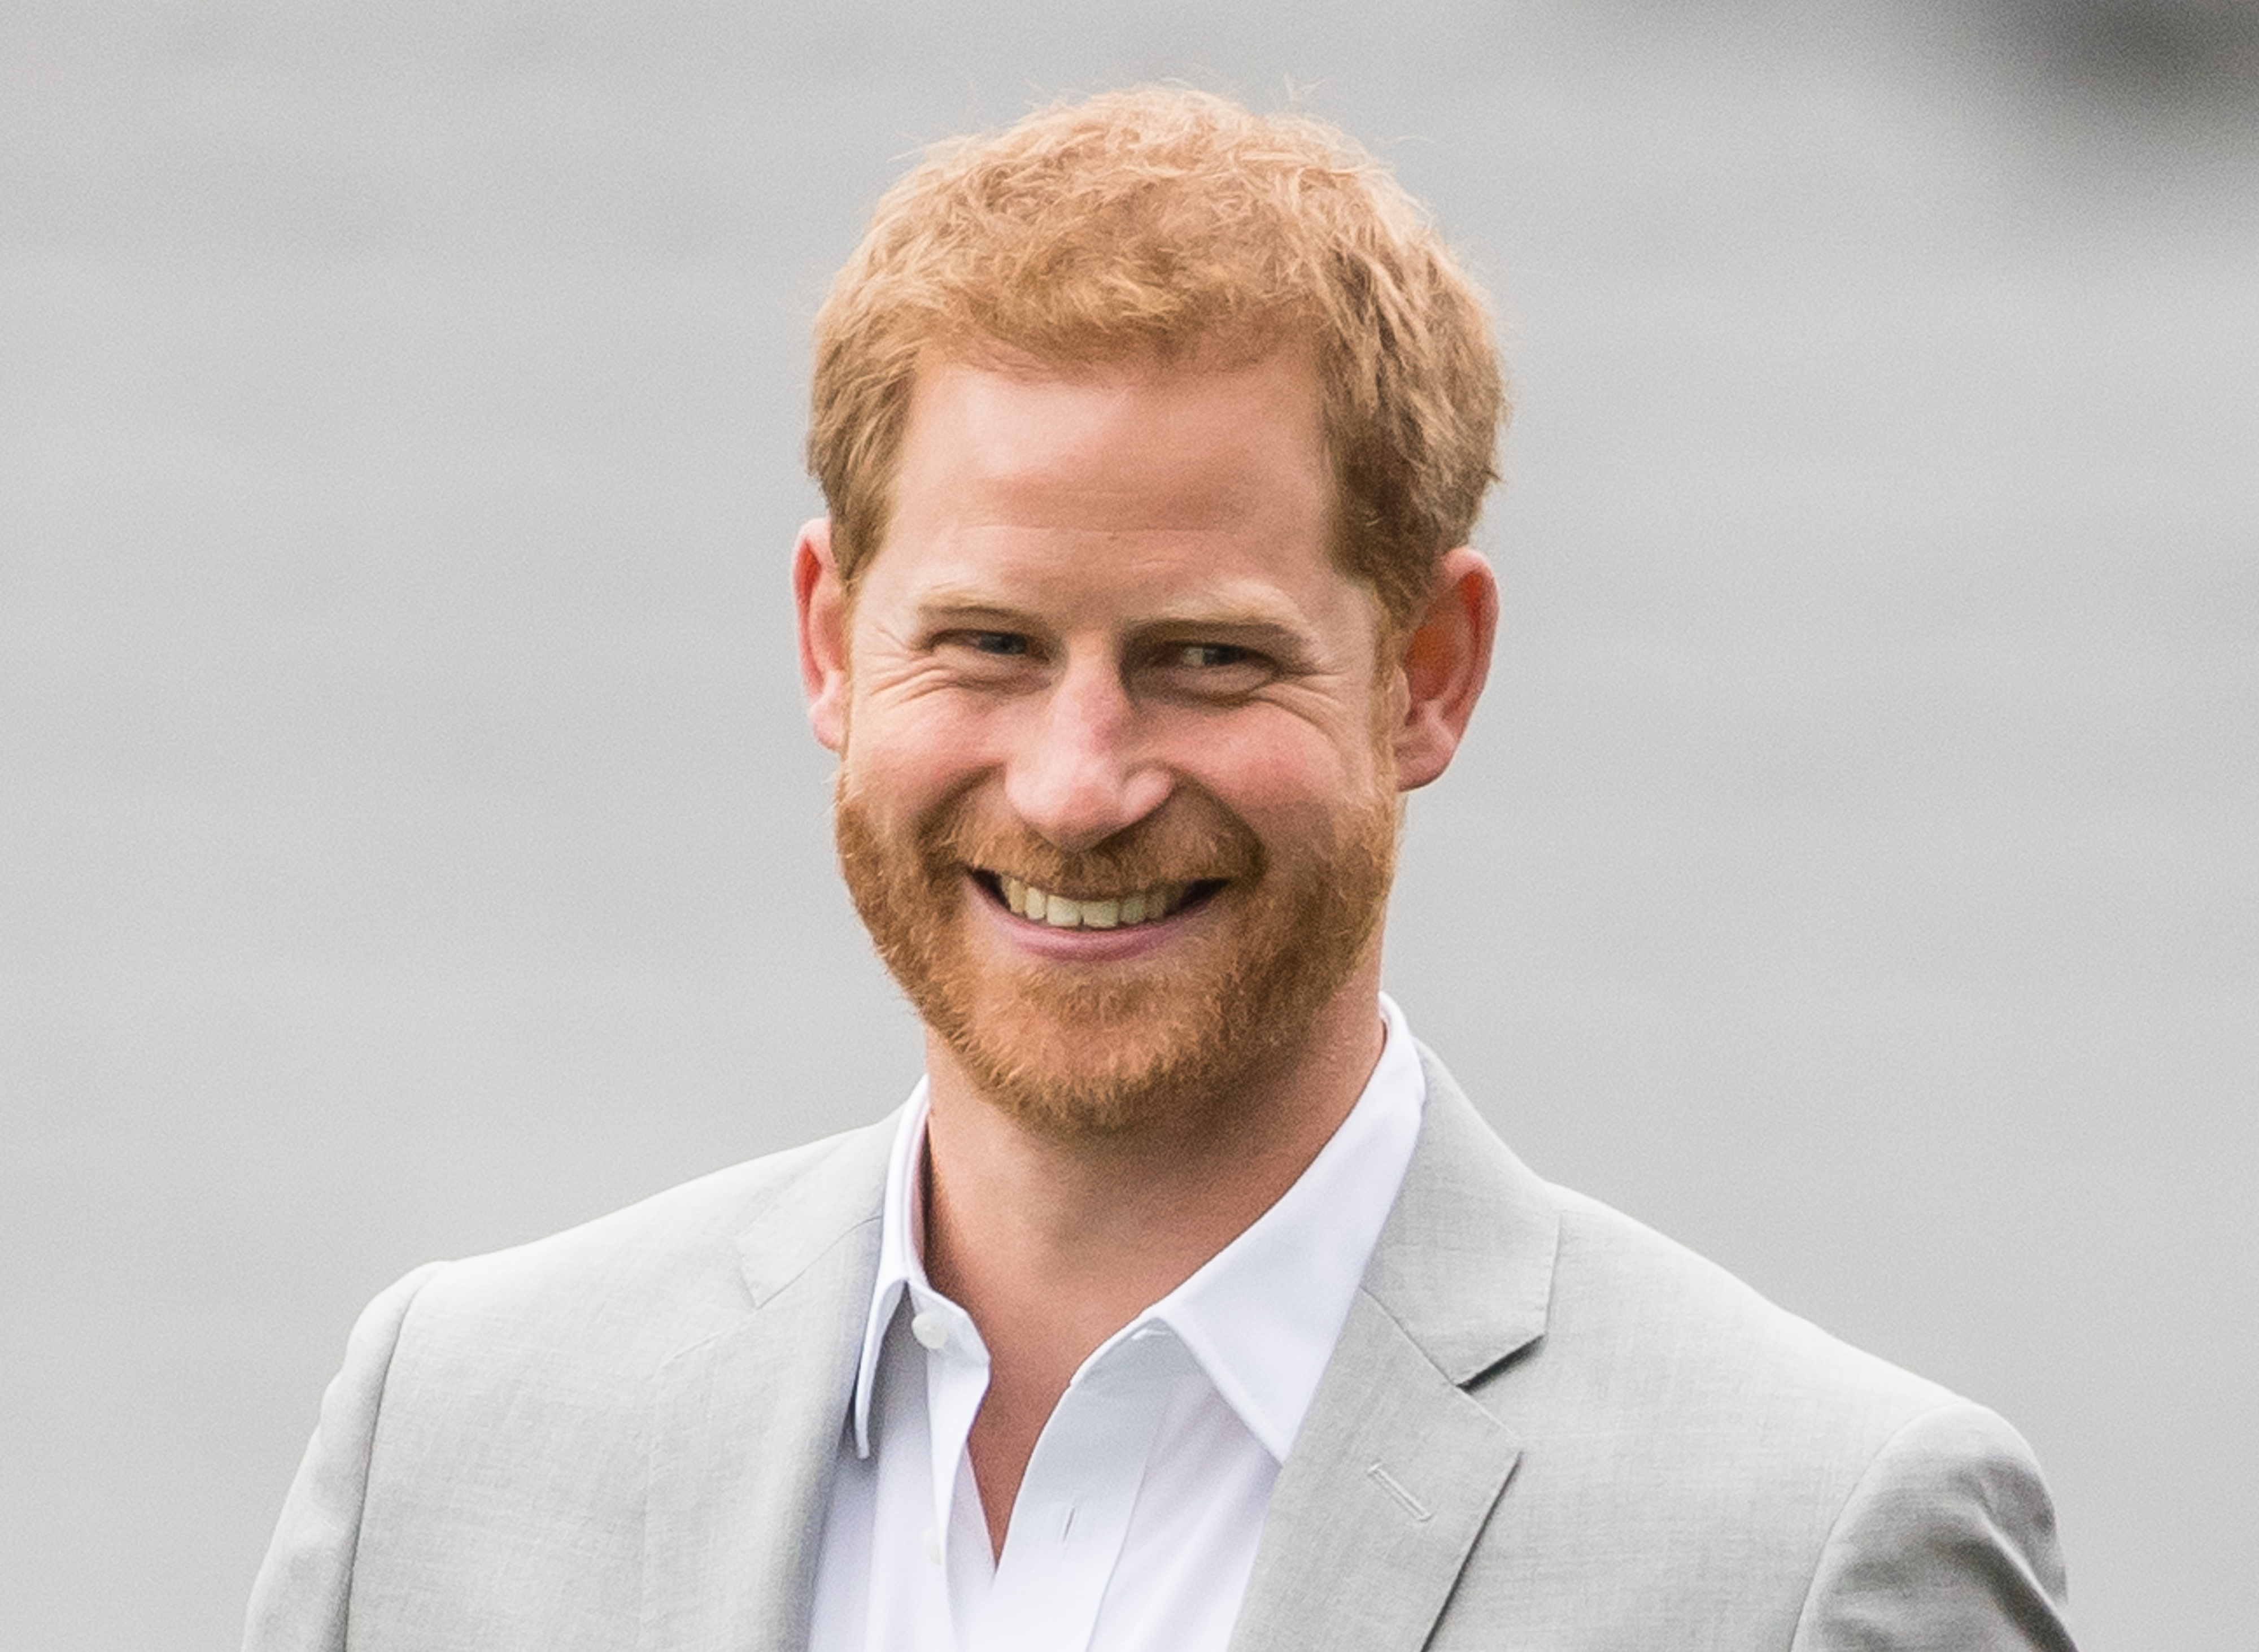 El príncipe Harry el 11 de julio de 2018 en Dublín, Irlanda | Foto: Getty Images